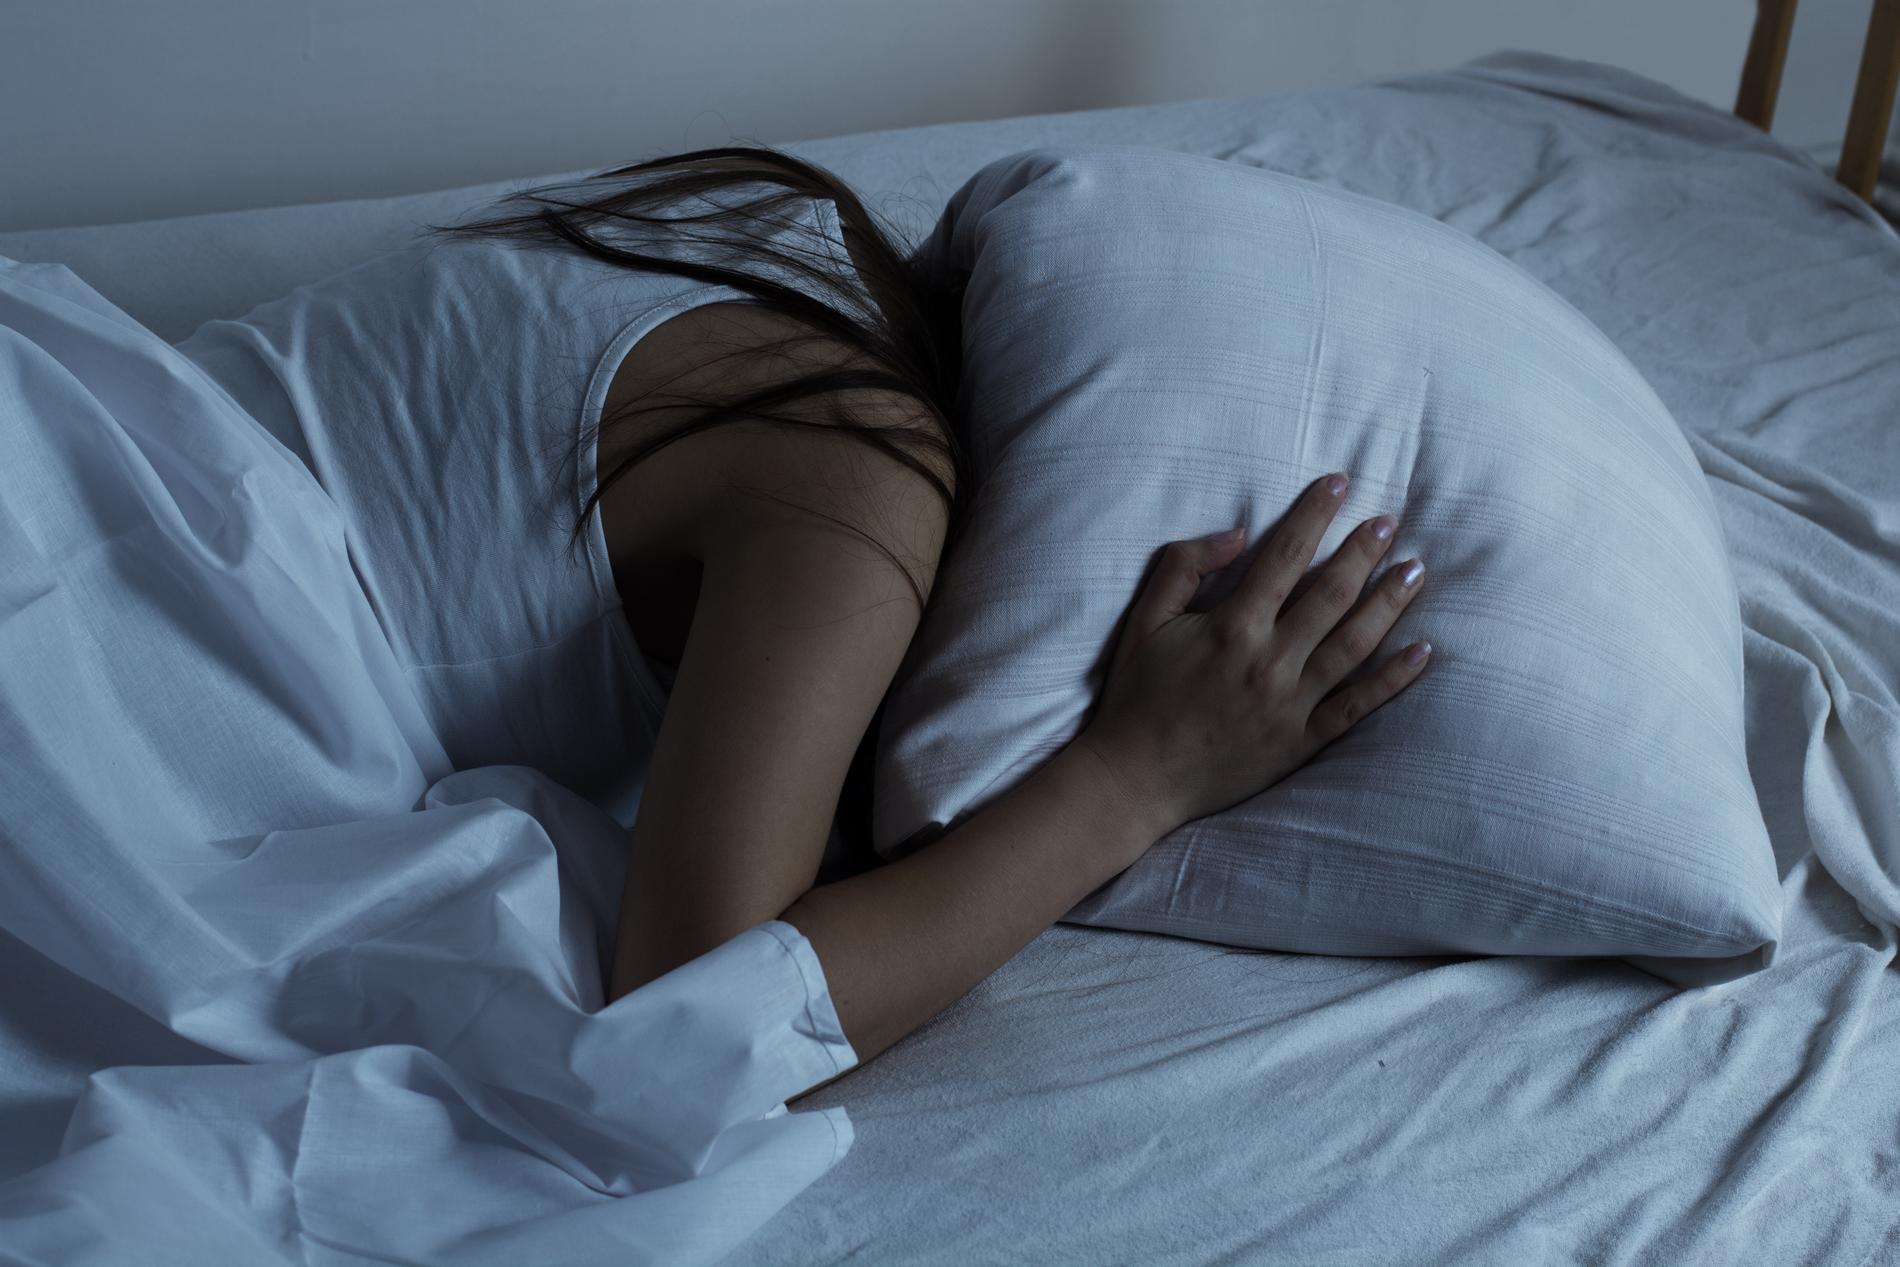 STORT PROBLEM: Kronisk søvnløshet blir ikke tatt like alvorlig som andre store folkesykdommer som diabetes og depresjon, mener innsenderne.